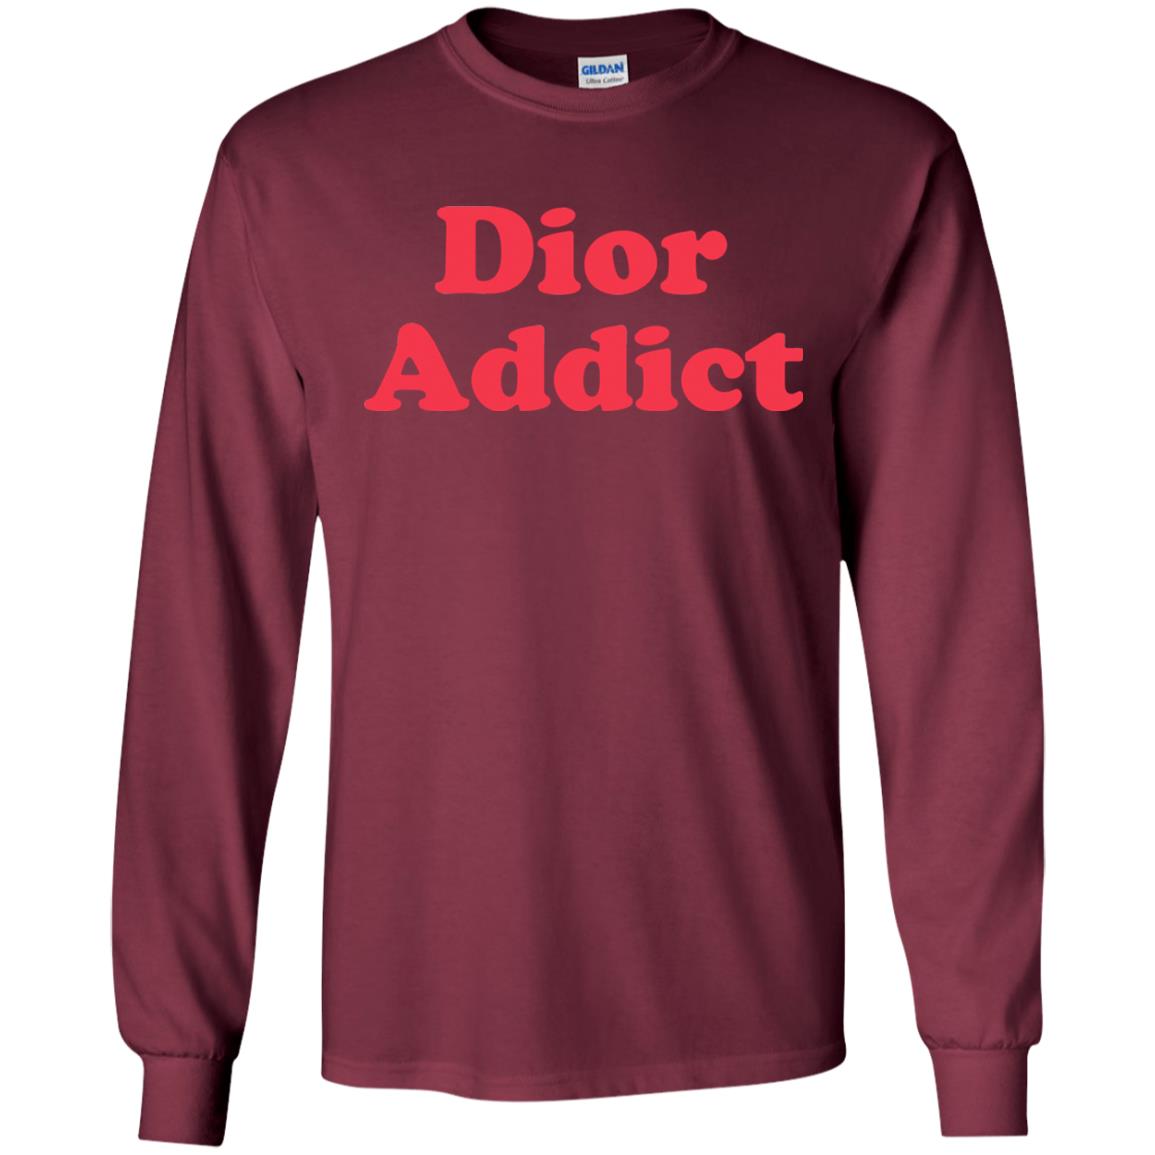 dior addict long sleeve - maroon